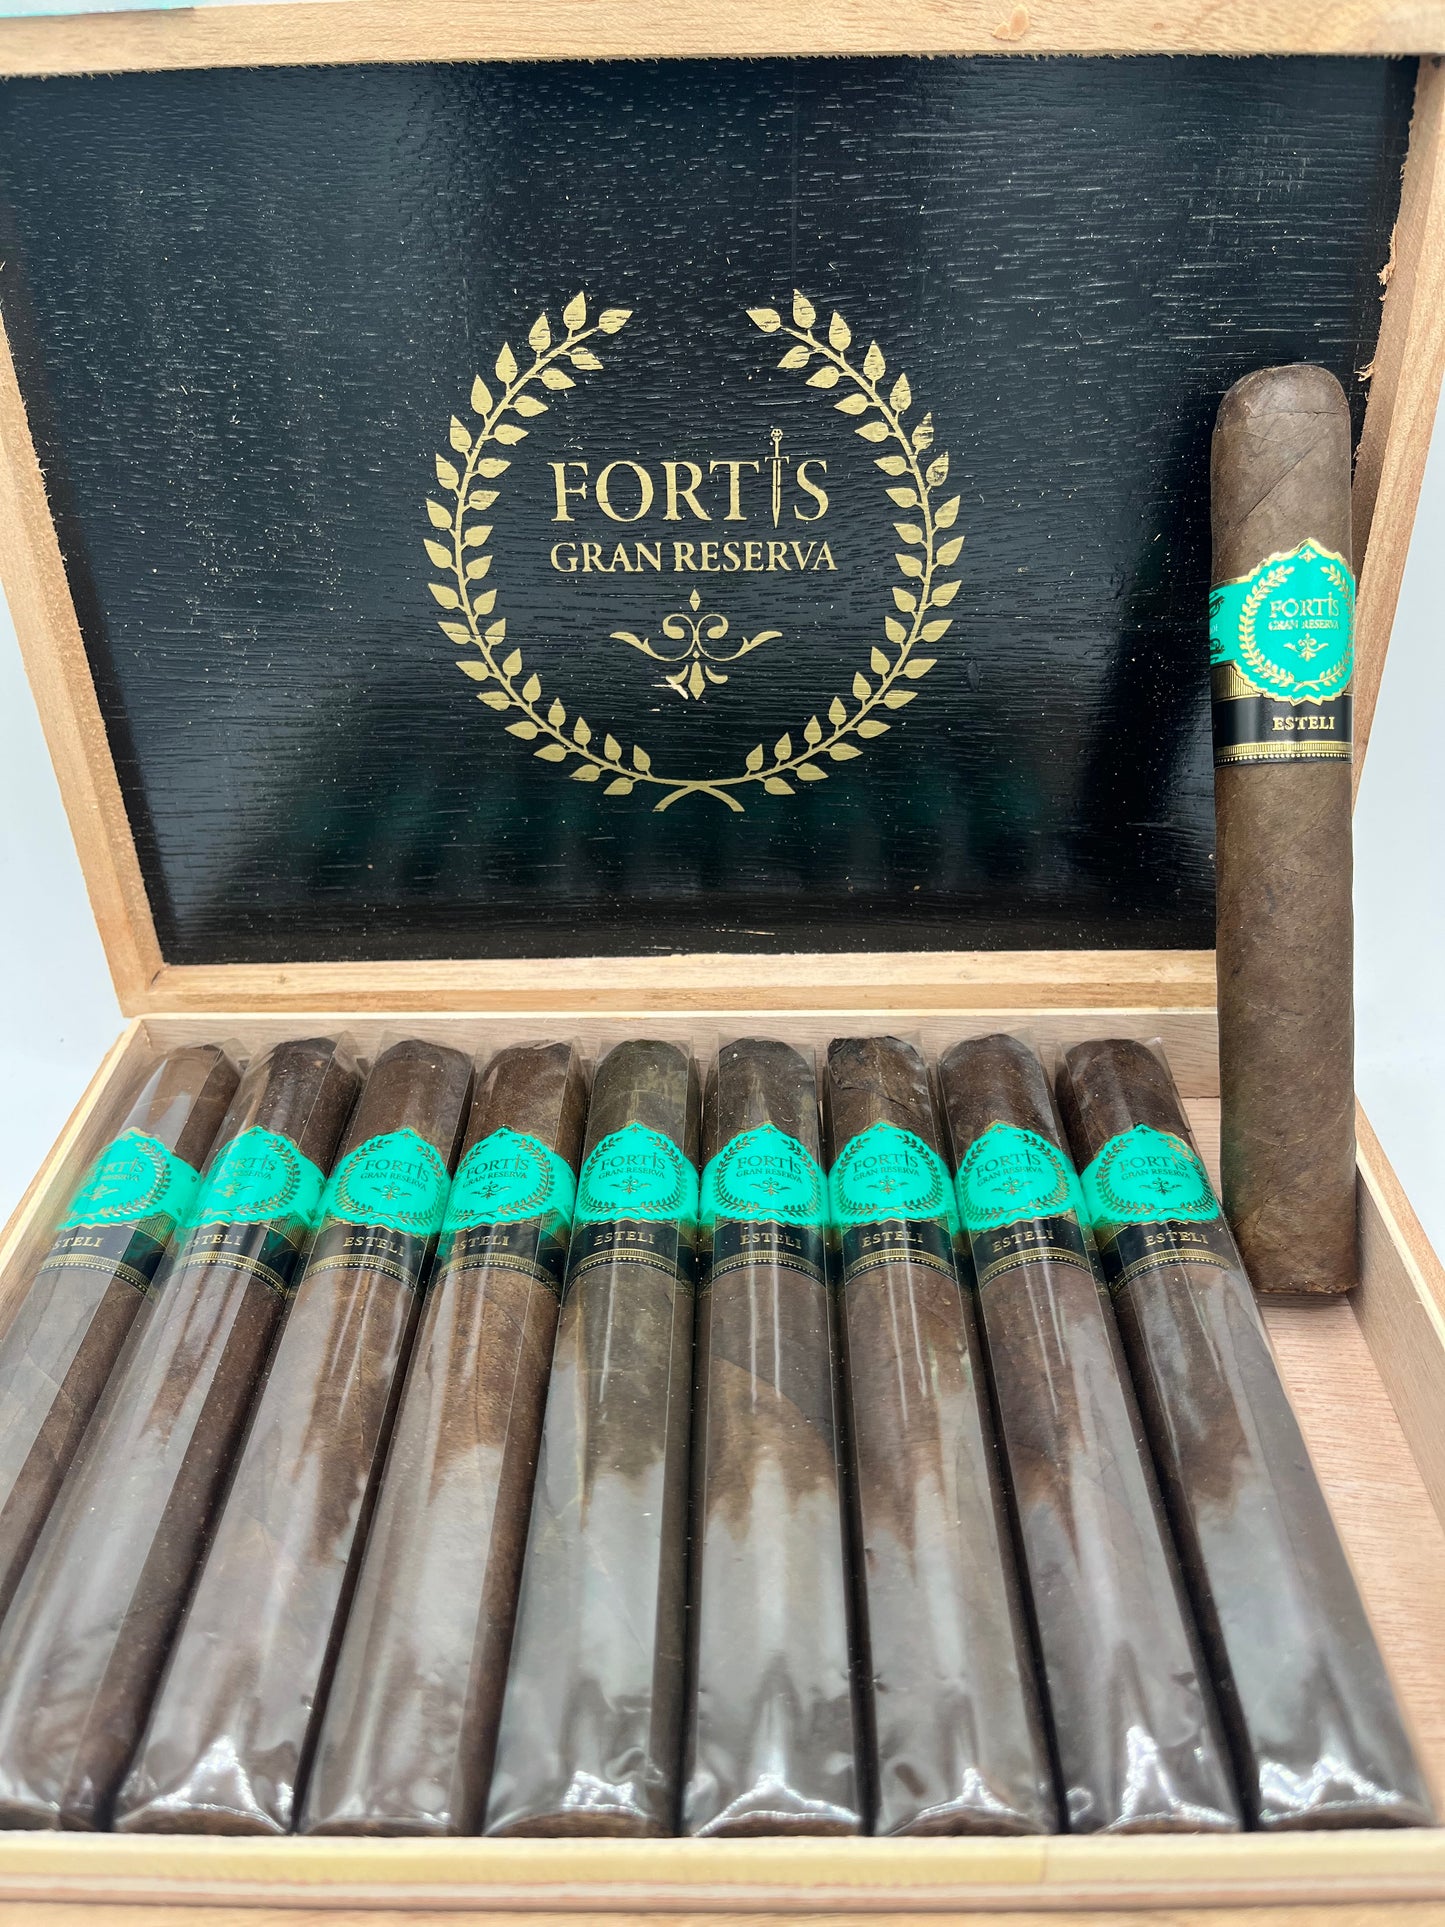 Fortis Cigars-Blended by AJ Fernandez